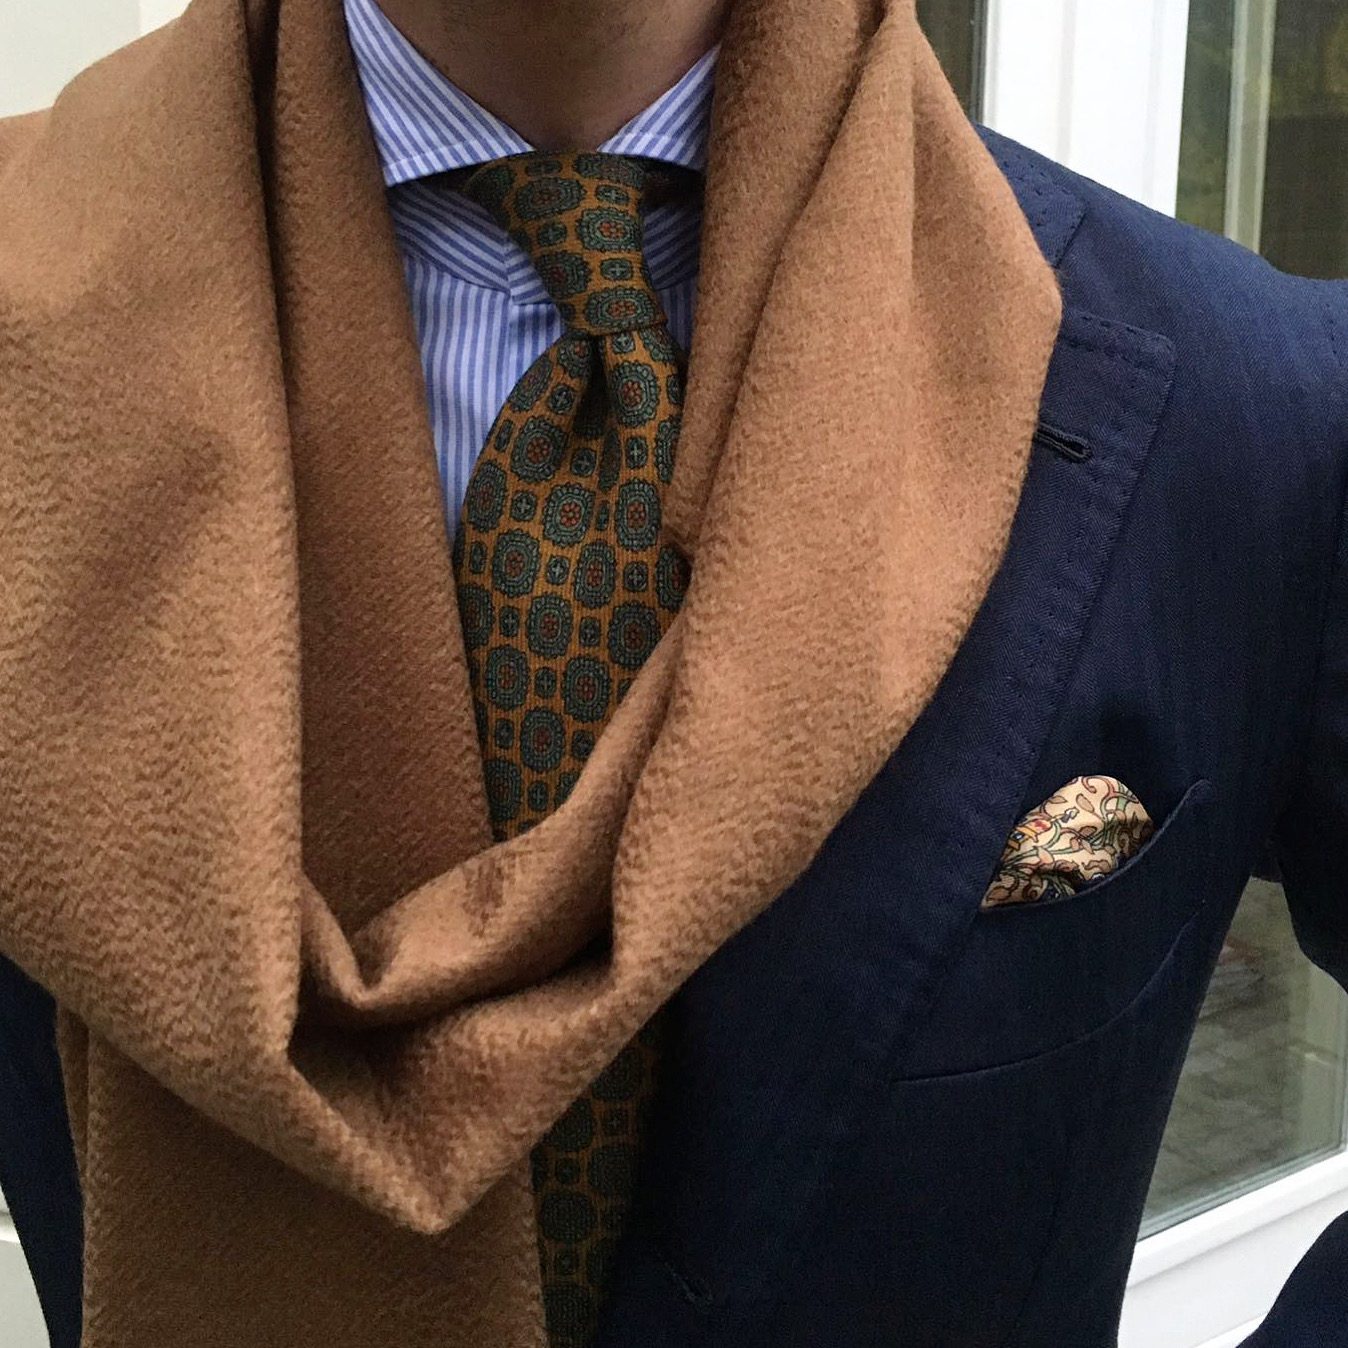 Wool Print Tie in Brown/Blue/Red Medallion